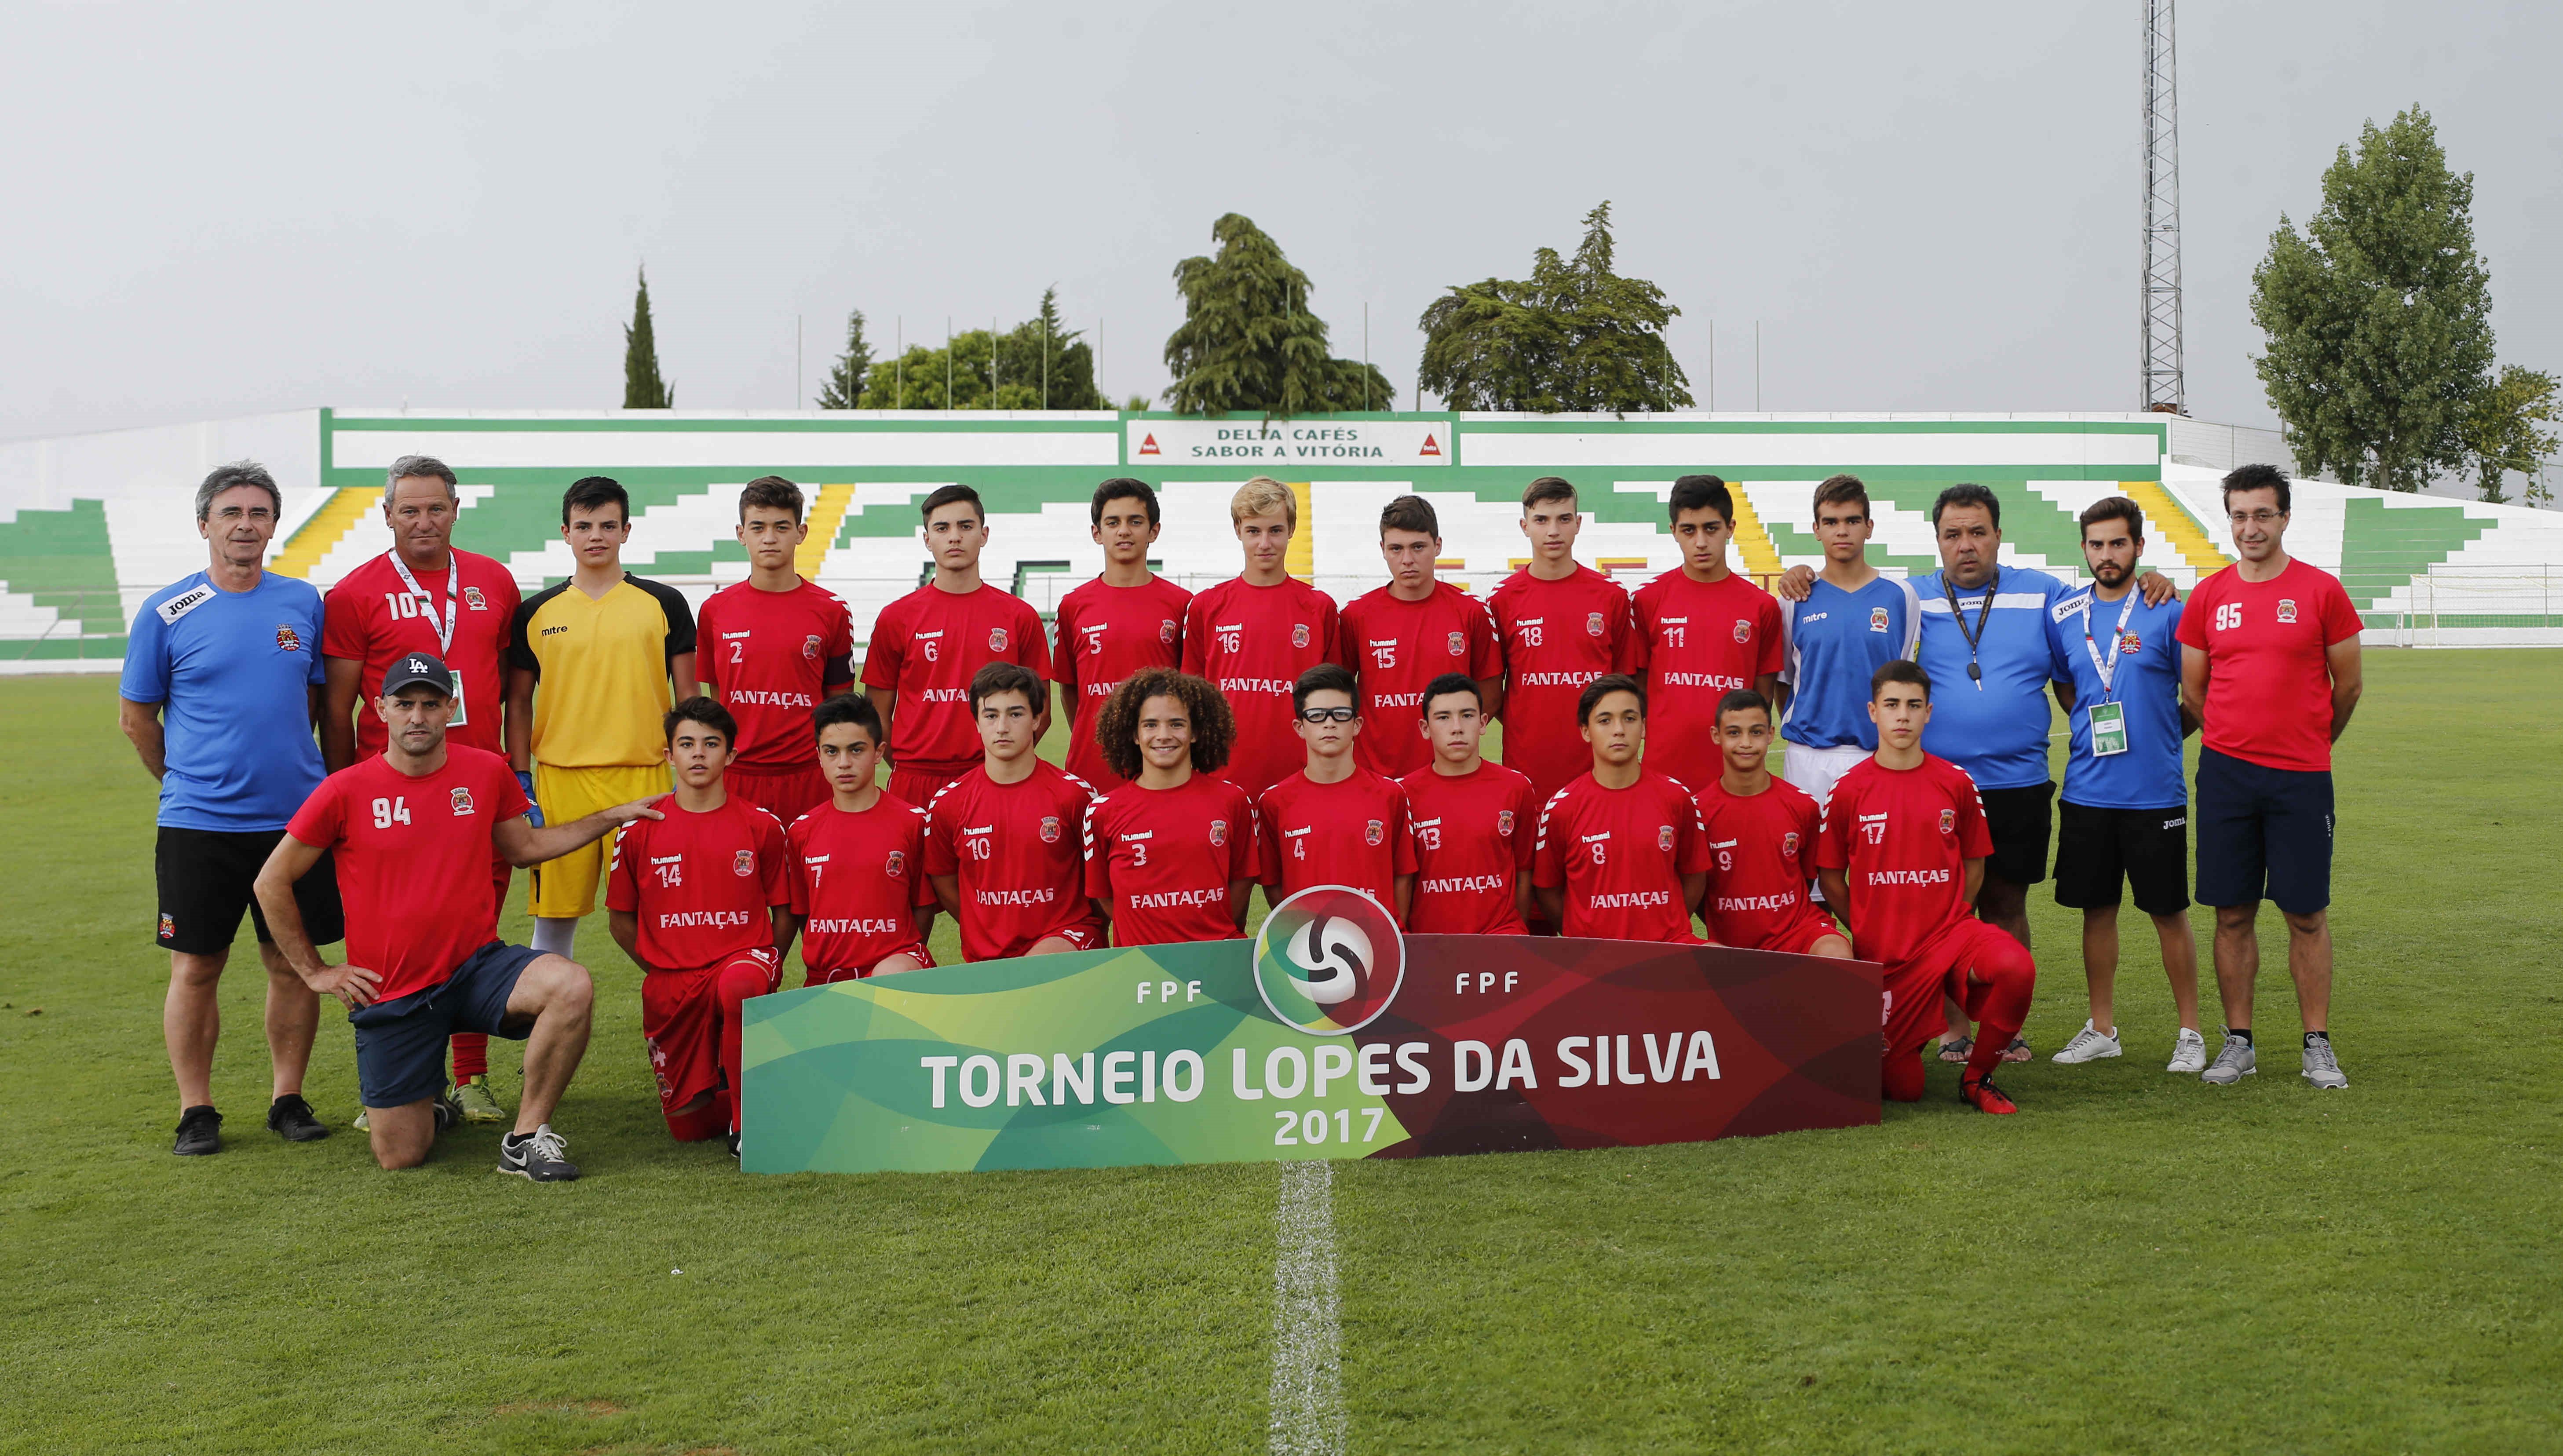 Confira os resultados da Selecção Sub/14 da AF Leiria no Torneio Lopes da Silva